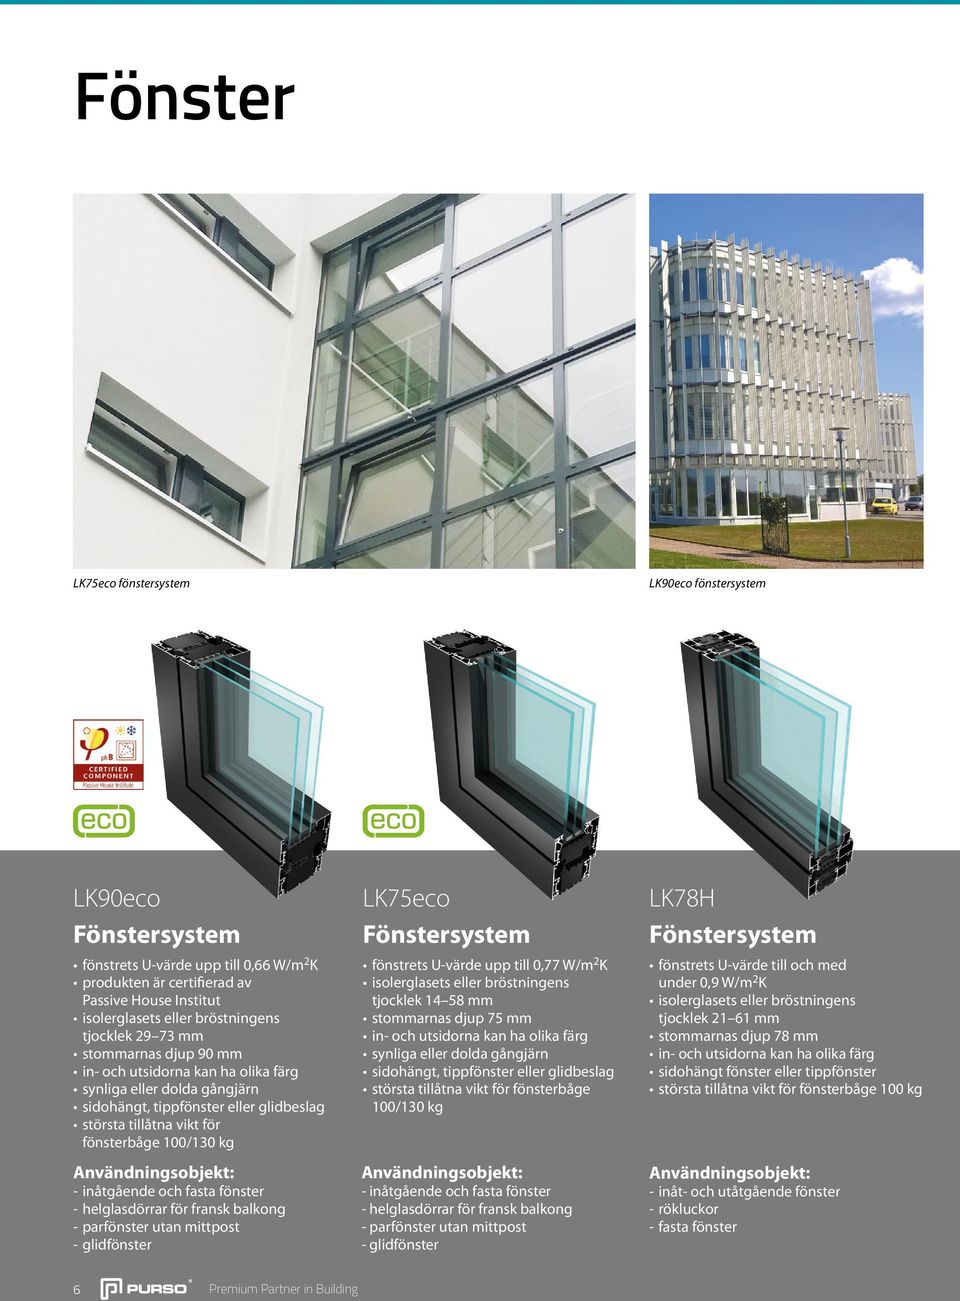 parfönster utan mittpost - glidfönster LK75eco Fönstersystem fönstrets U-värde upp till 0,77 W/m 2 K tjocklek 14 58 mm stommarnas djup 75 mm synliga eller dolda gångjärn sidohängt, tippfönster eller